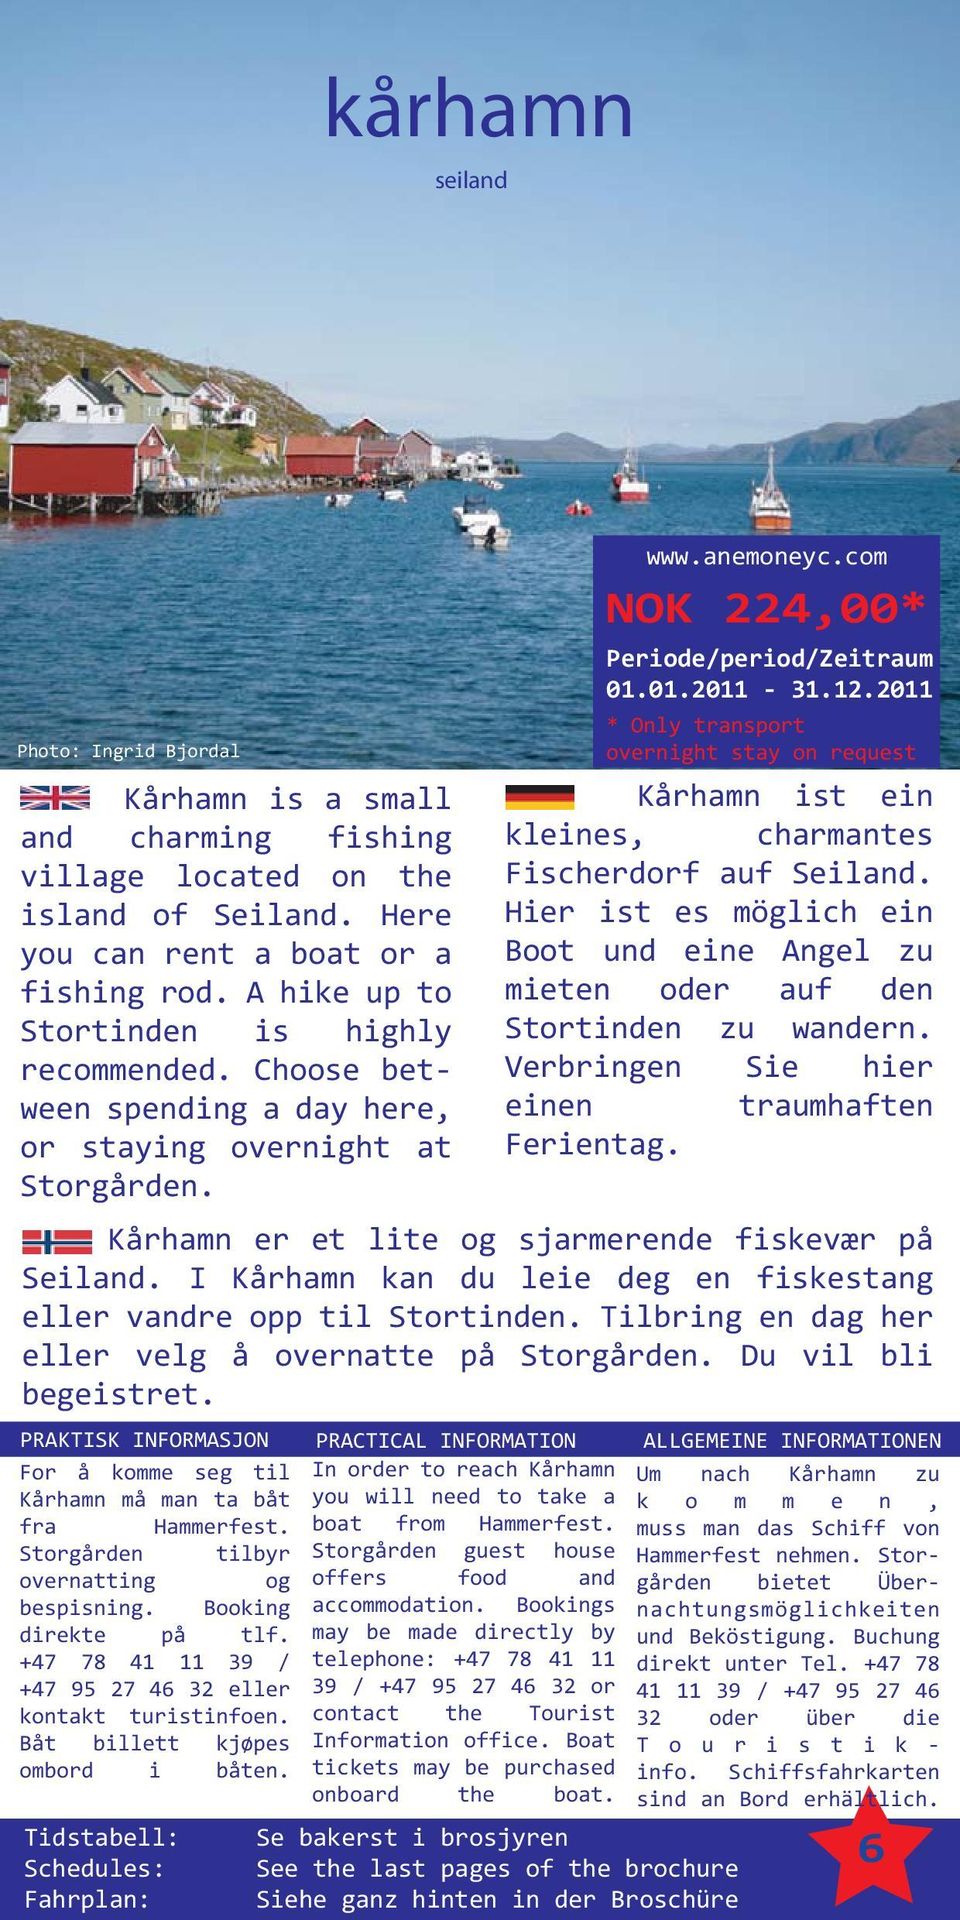 2011 * Only transport overnight stay on request Kårhamn ist ein kleines, charmantes Fischerdorf auf Seiland. Hier ist es möglich ein Boot und eine Angel zu mieten oder auf den Stortinden zu wandern.